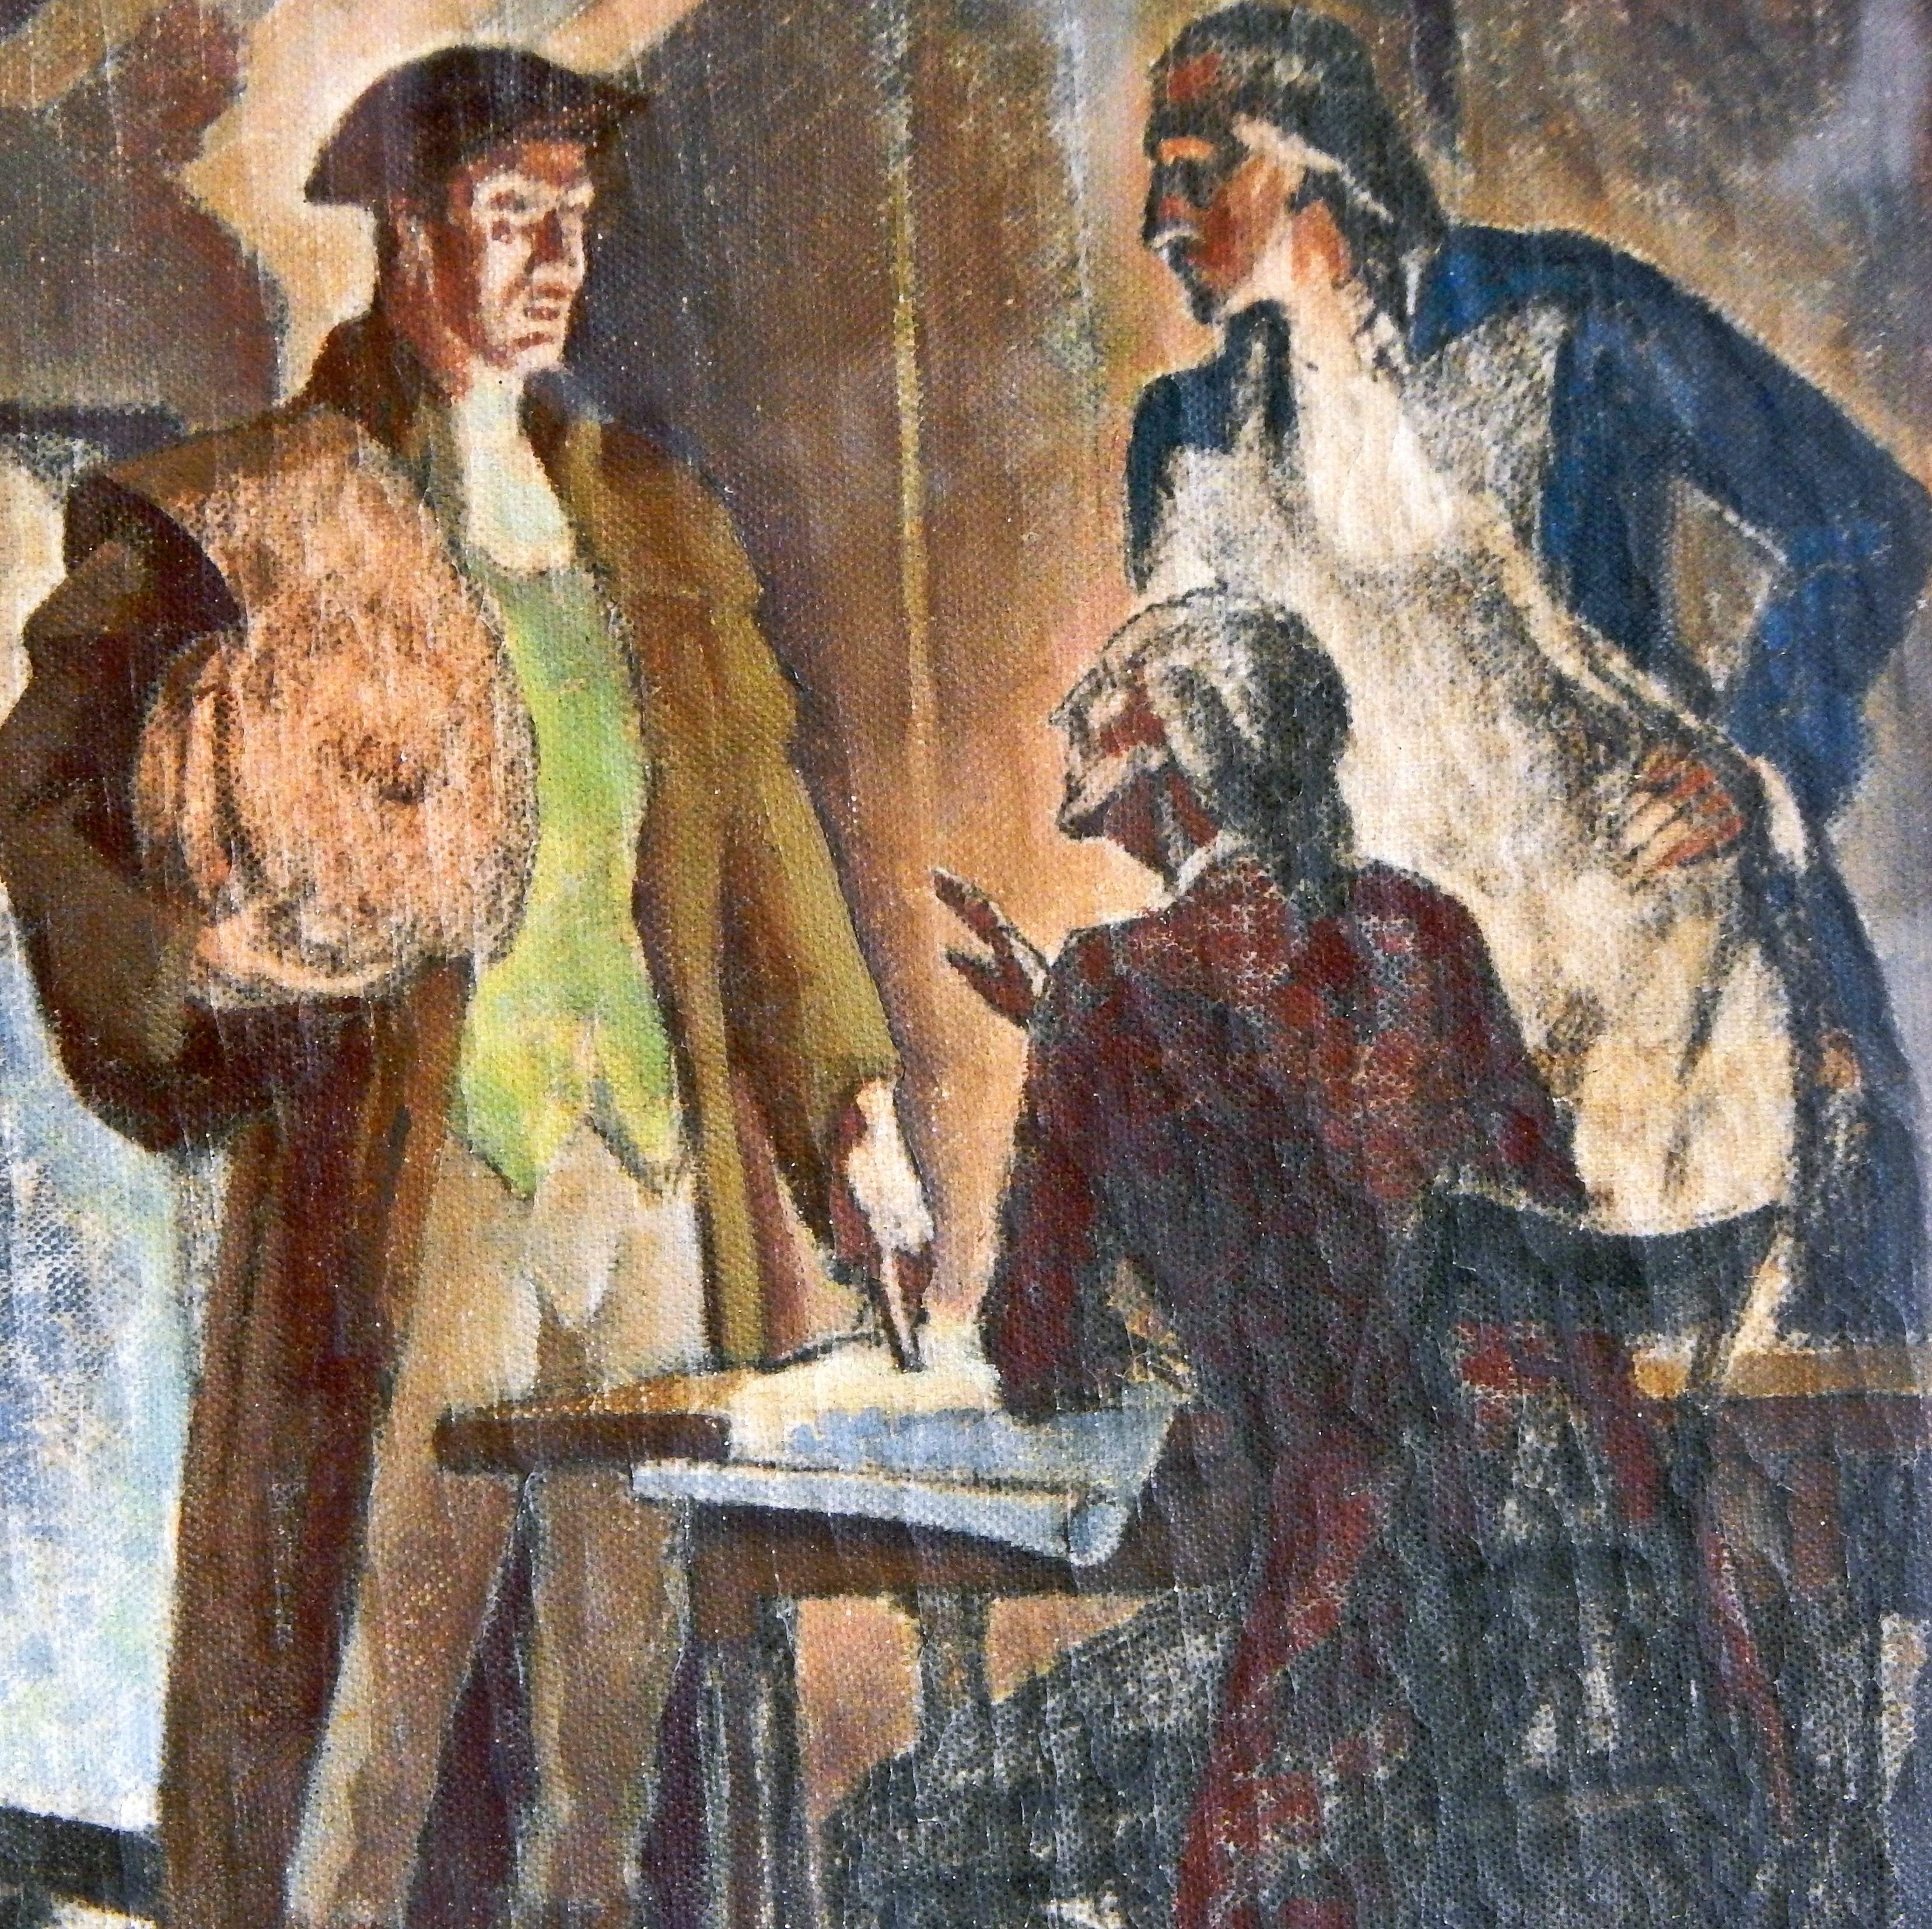 Pleine d'atmosphère, de couleurs riches et de drame, cette étude à l'huile sur toile entièrement réalisée par Dunbar Beck a été exécutée en préparation de sa peinture du hall d'entrée du bureau de poste américain de Danvers, dans le Massachusetts.